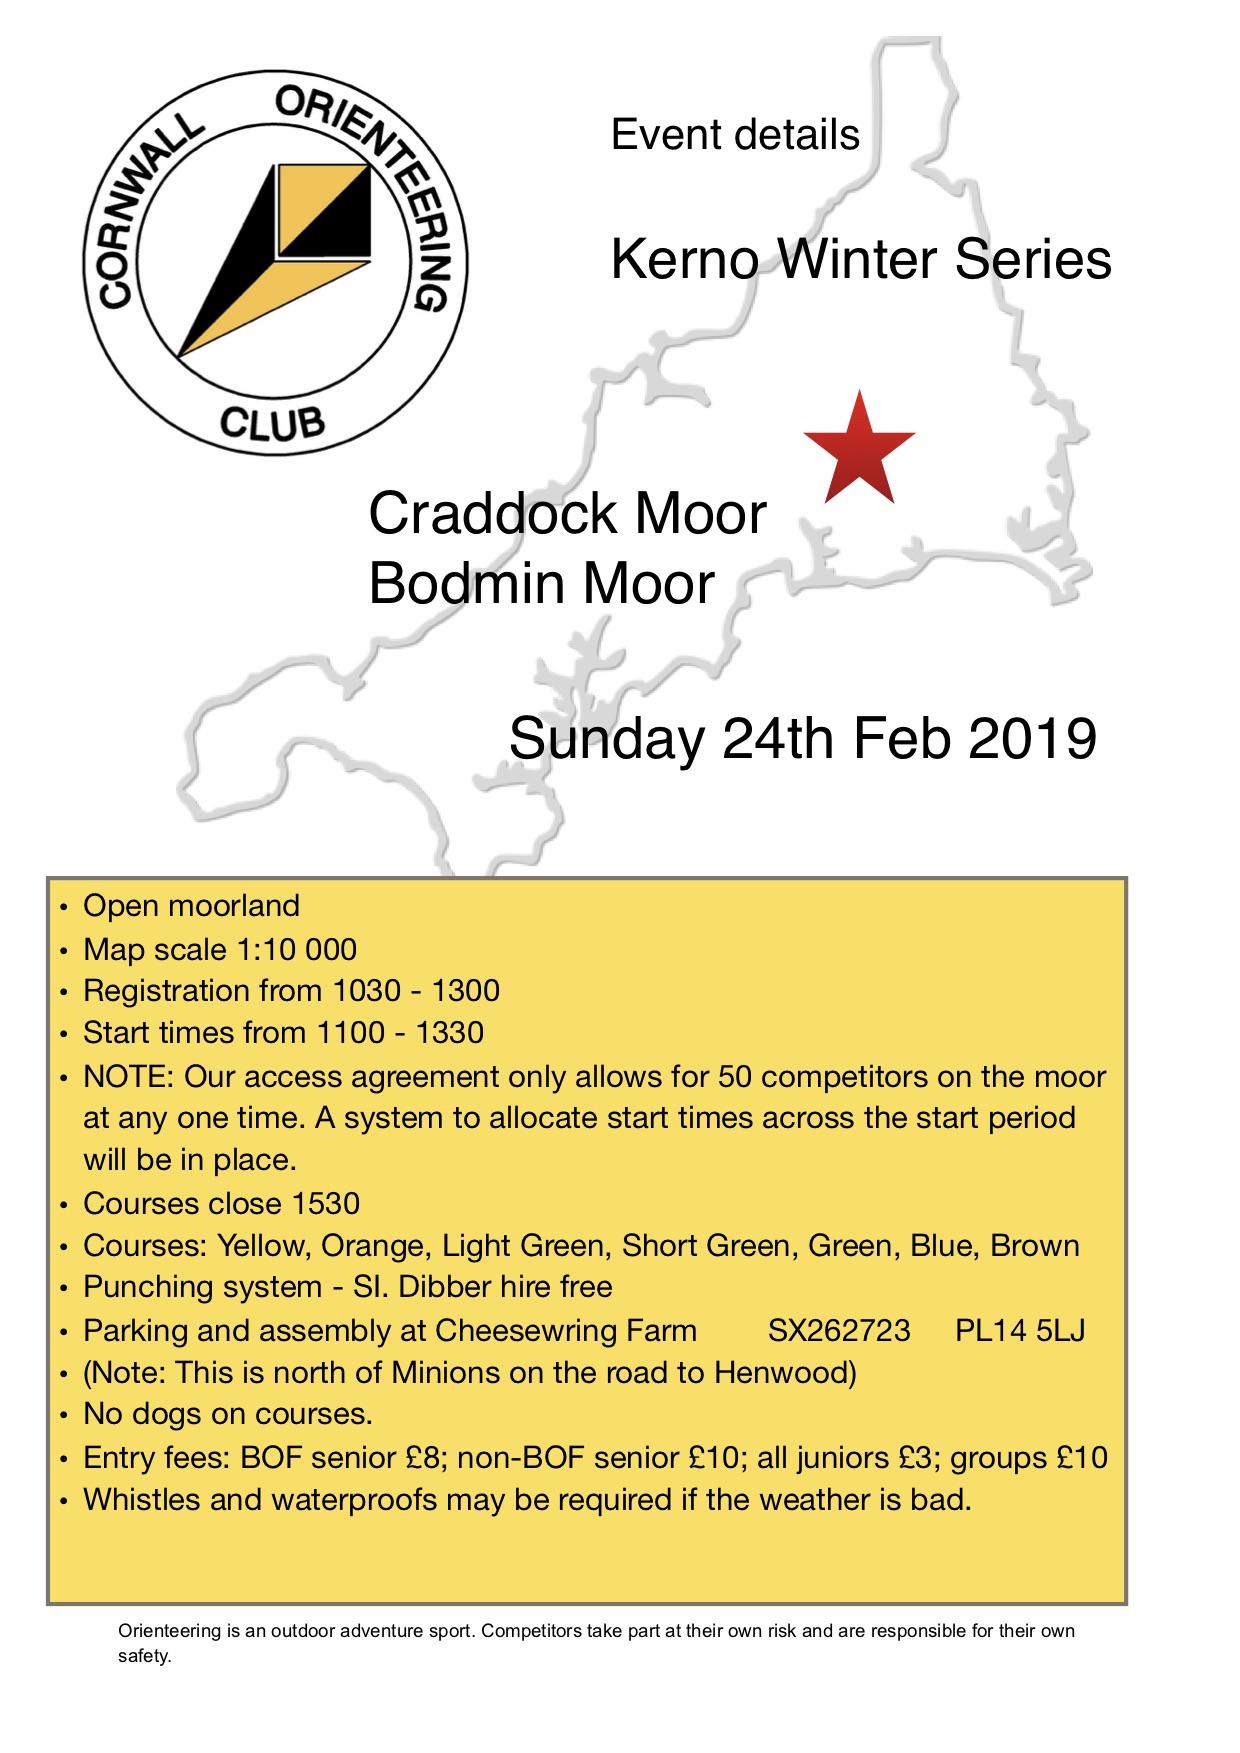 flyer for craddock moor event